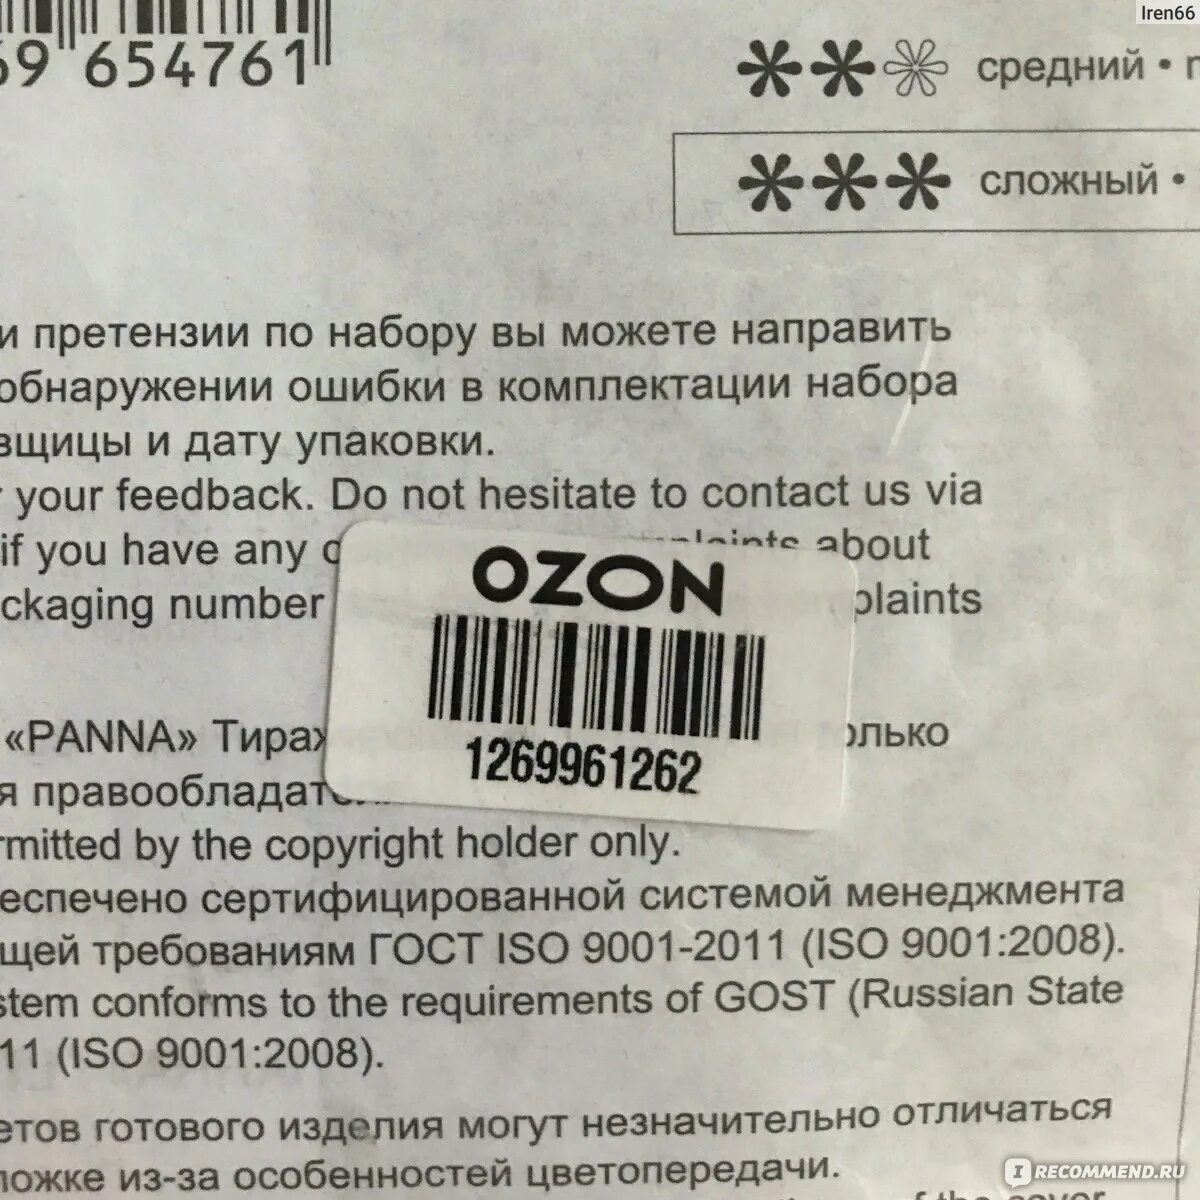 Штрихкод заказа. Этикетка на товар для озона. Штрихкод Озон требования. OZON этикетка штрих код. Требования к этикетке Озон.